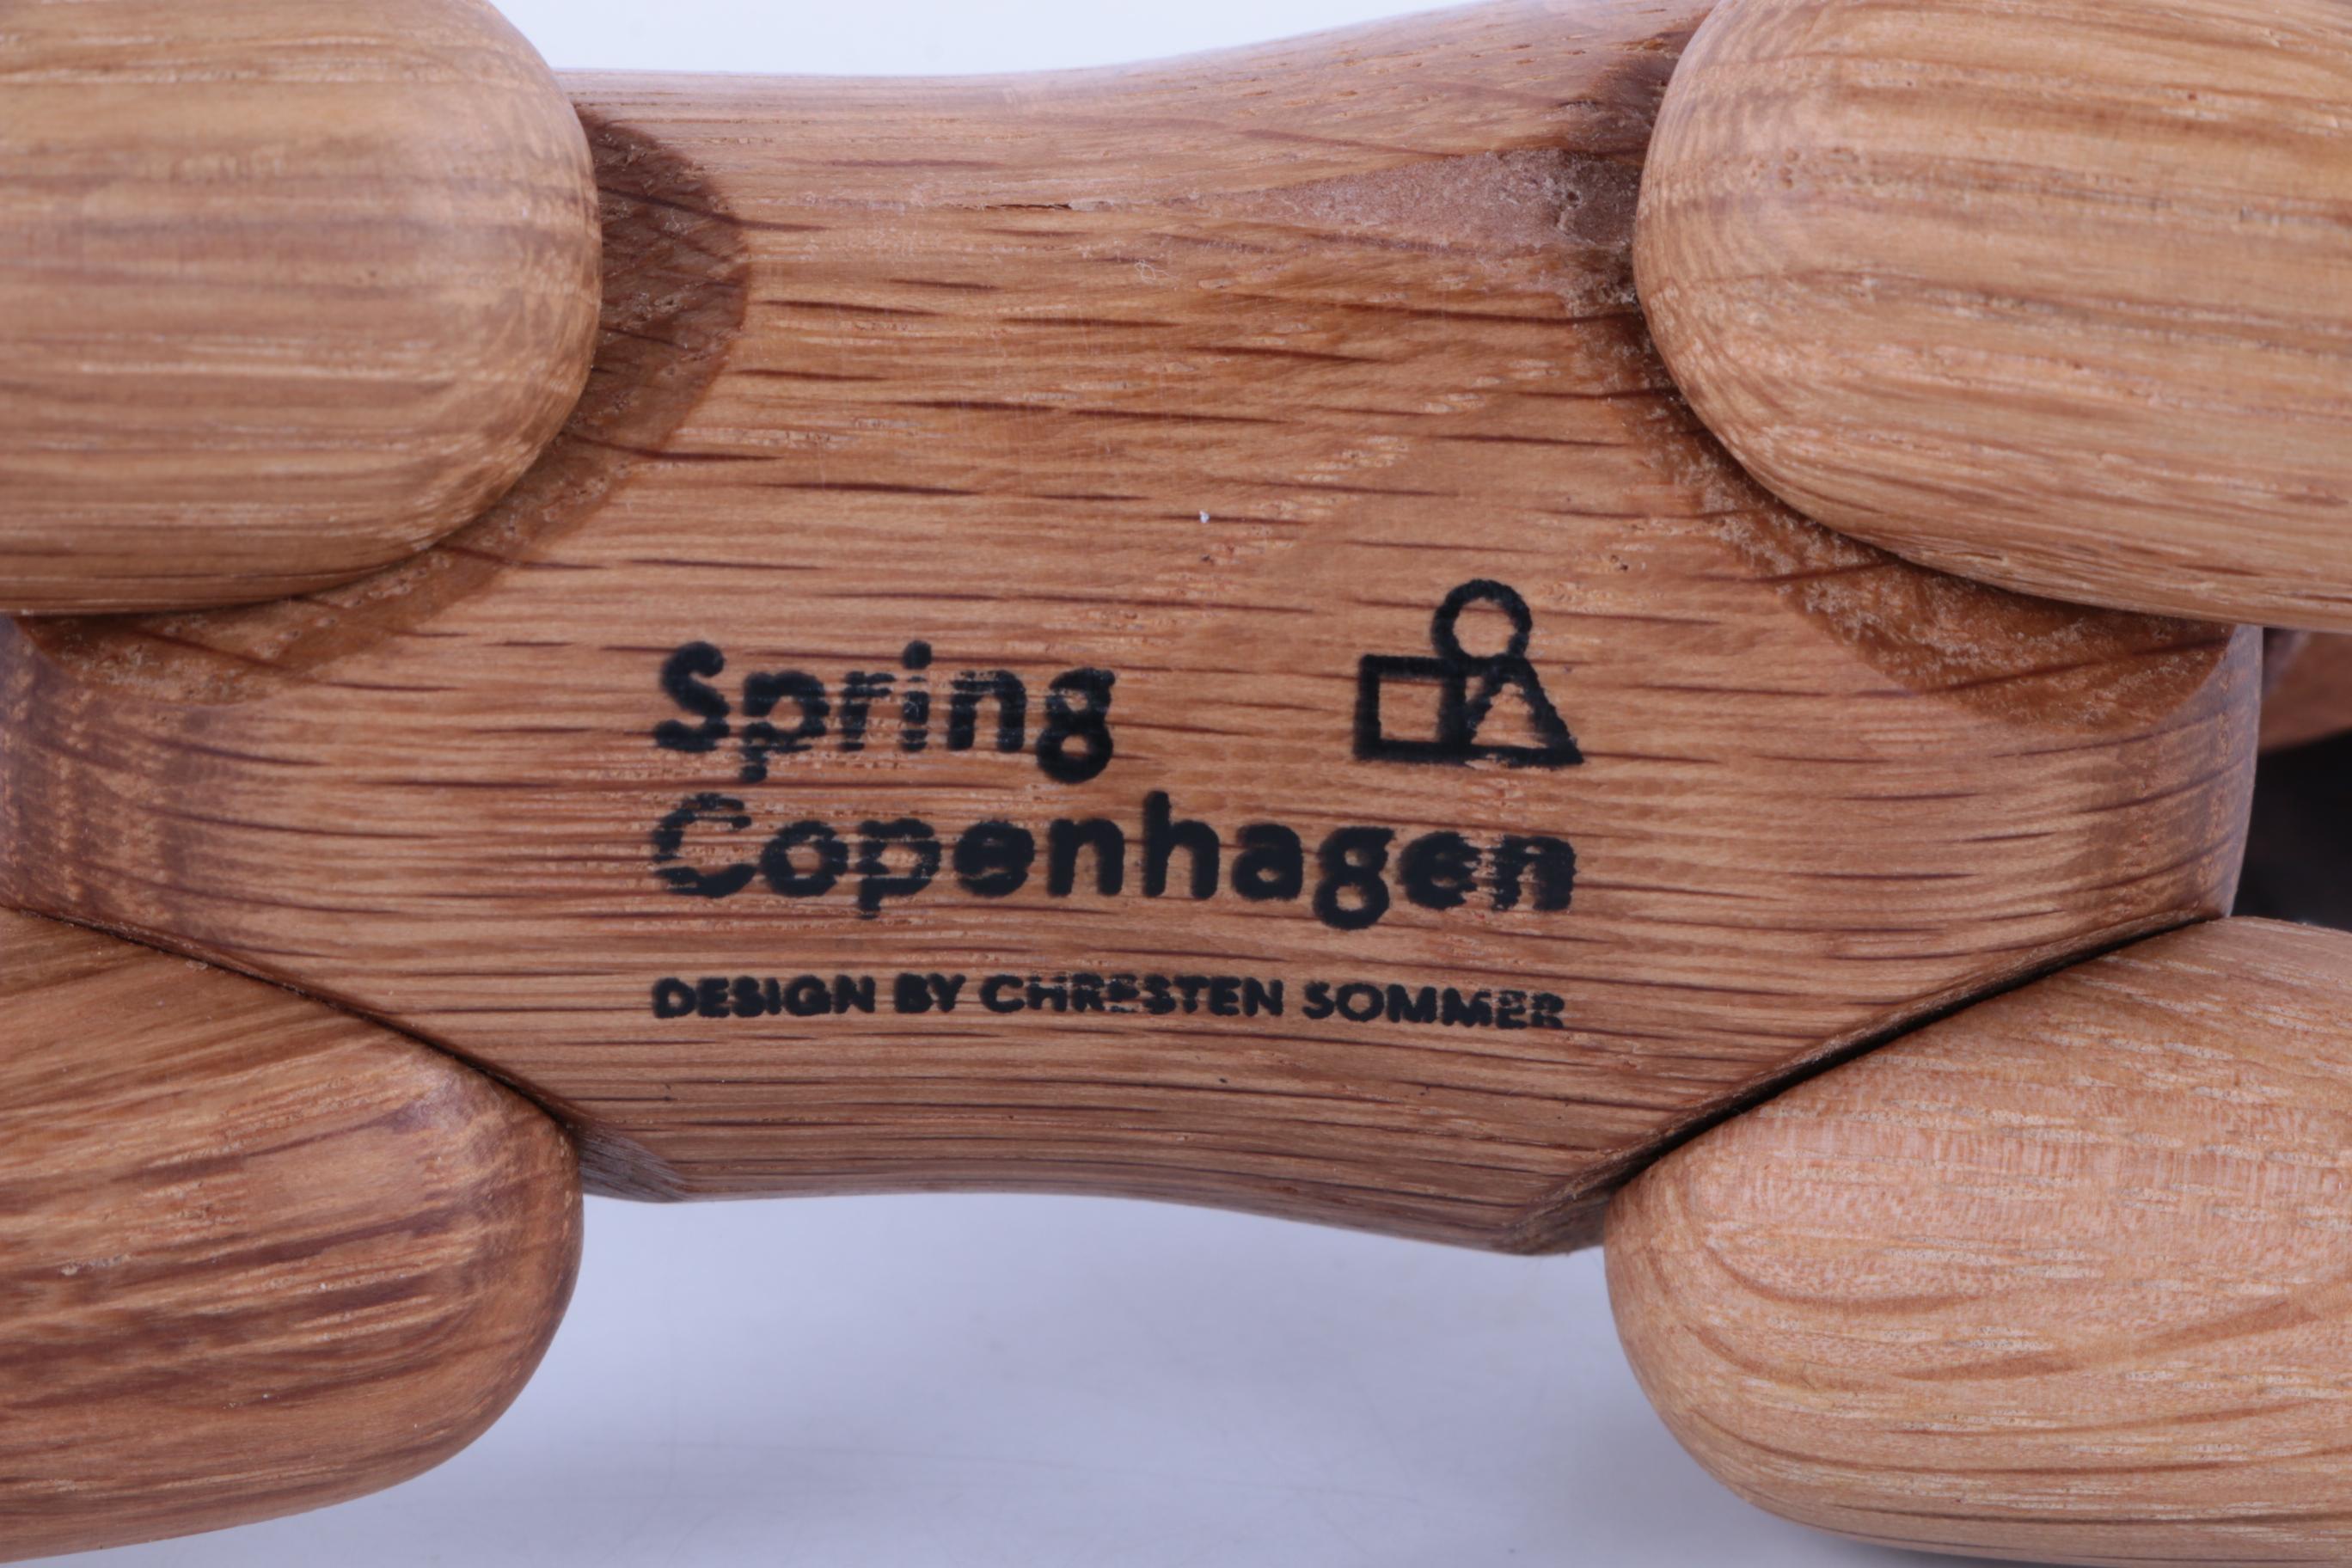 Cheerful Wooden Dog by Chresten Sommer for Spring, Copenhagen, Denmark 5